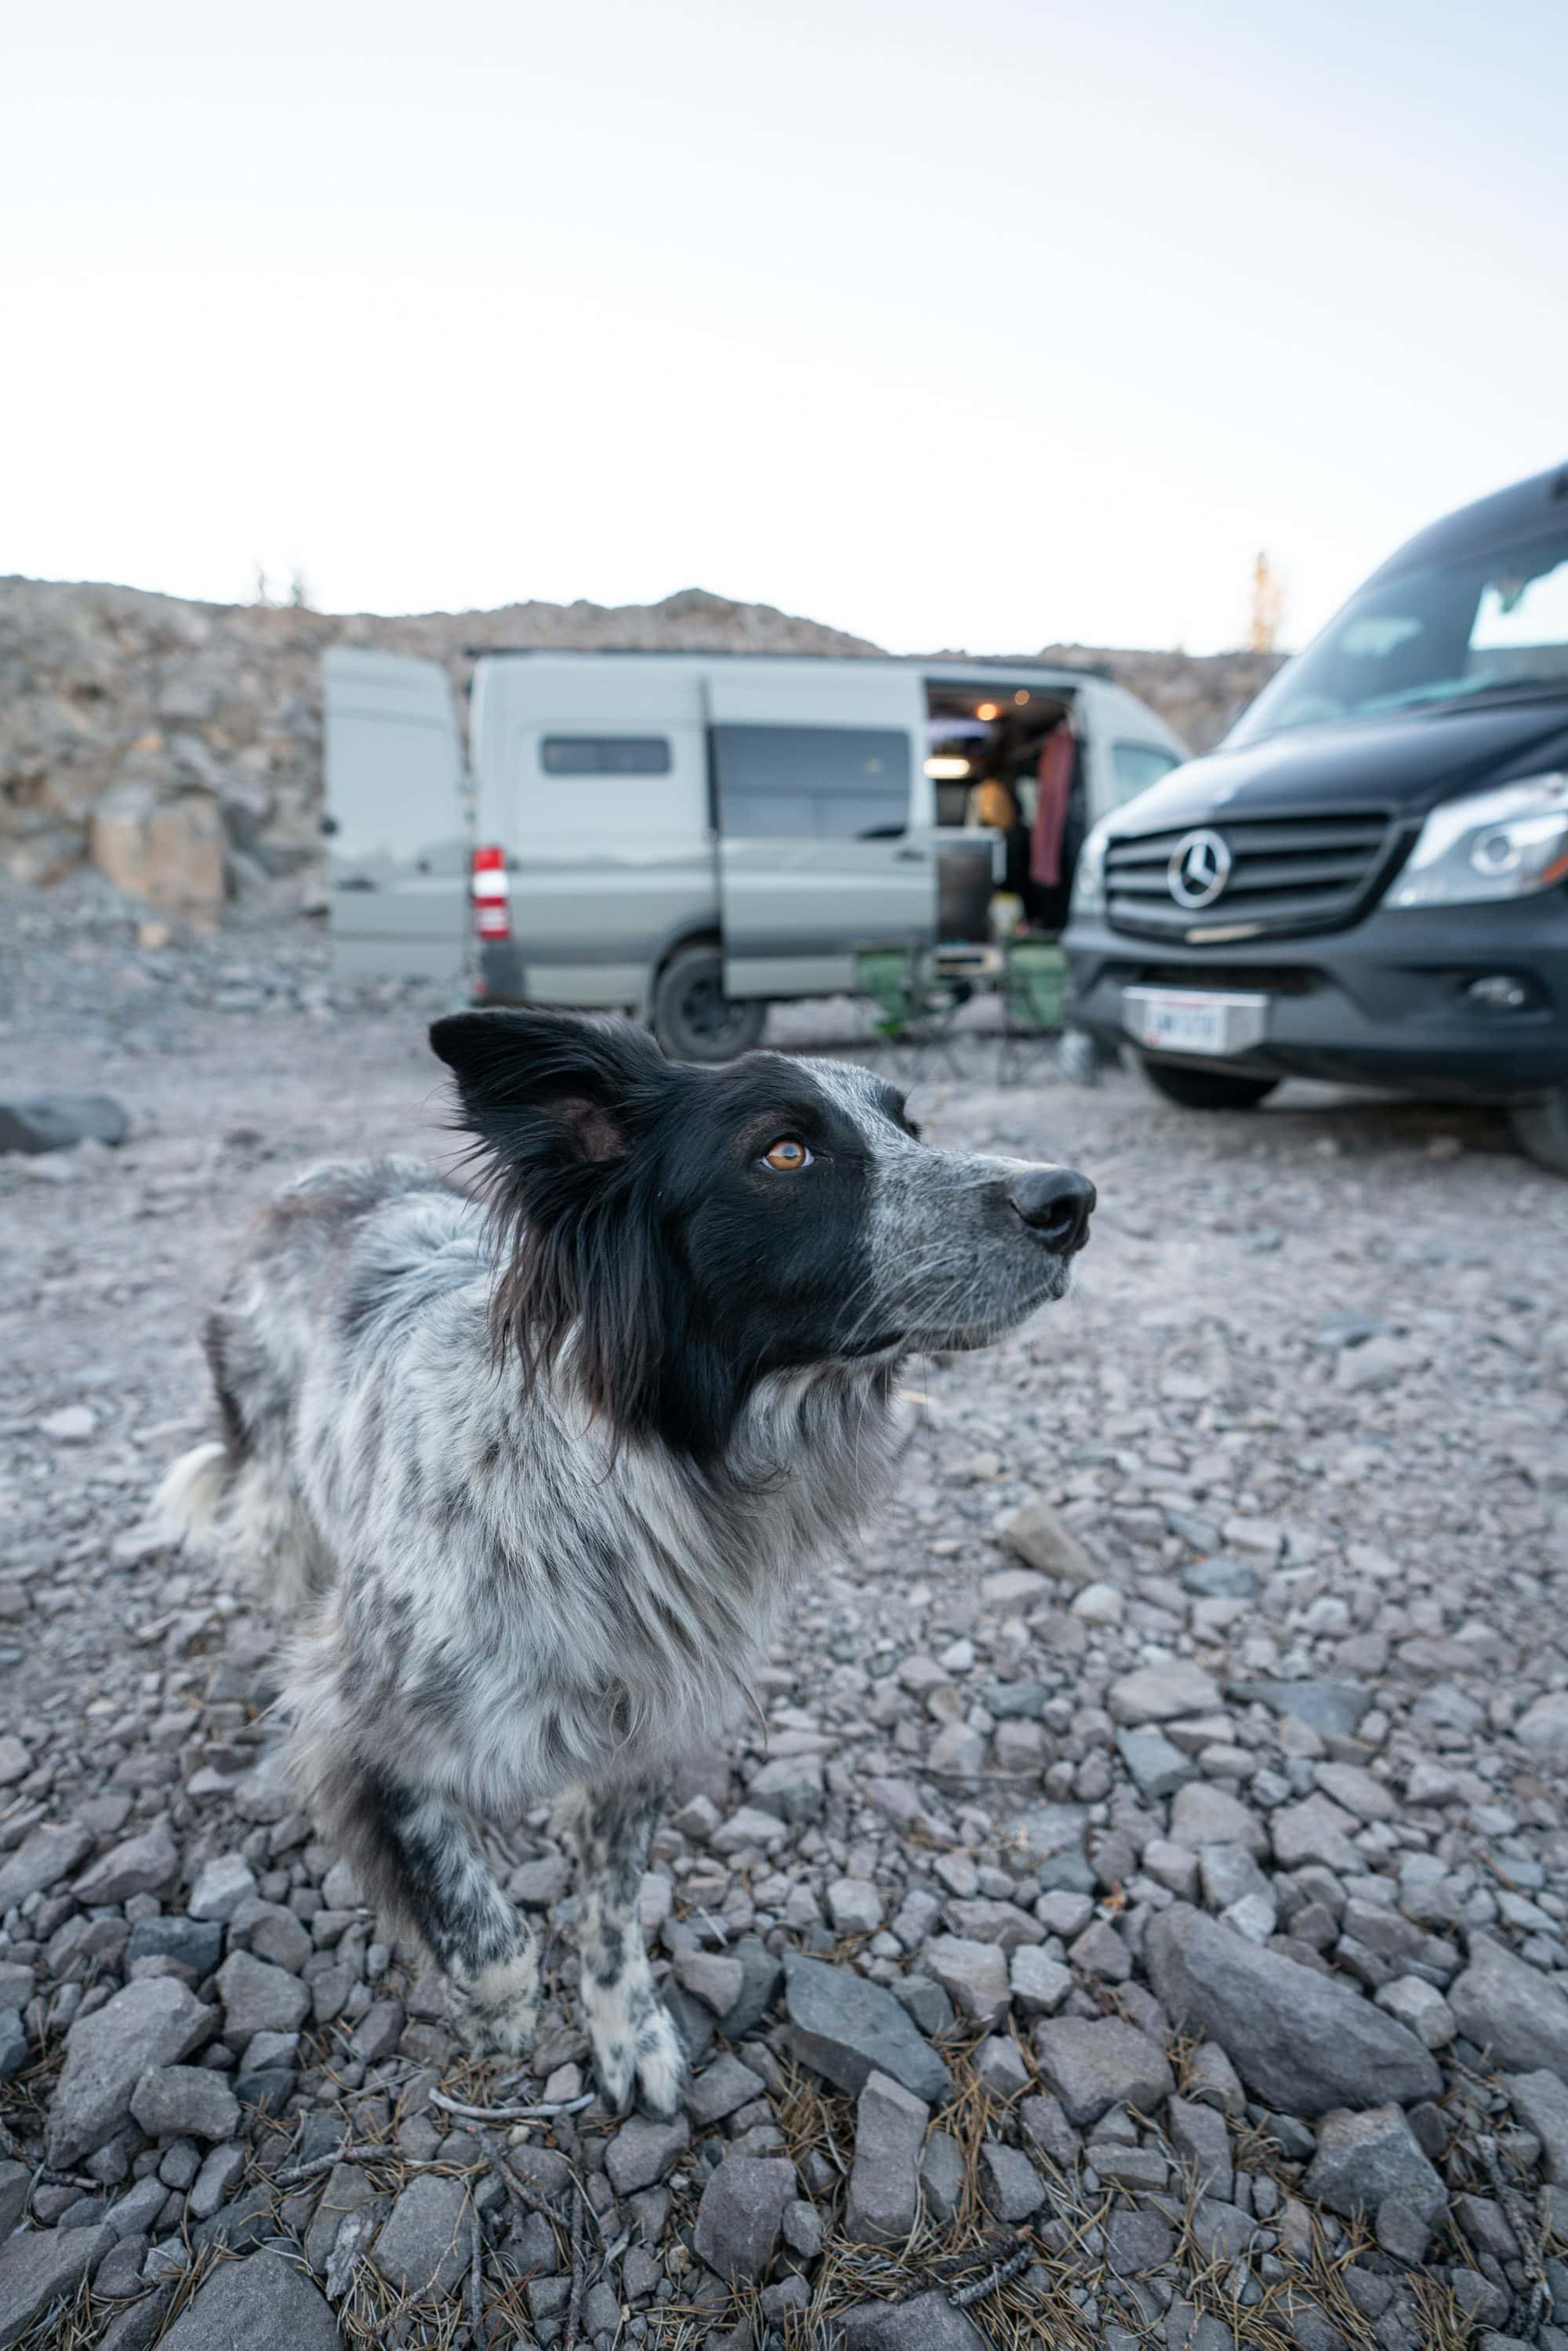 想知道带狗的货车生活是什么样的吗?以下是与宠物一起住在货车里的小贴士，以及如何在旅行时找到适合狗狗的活动。